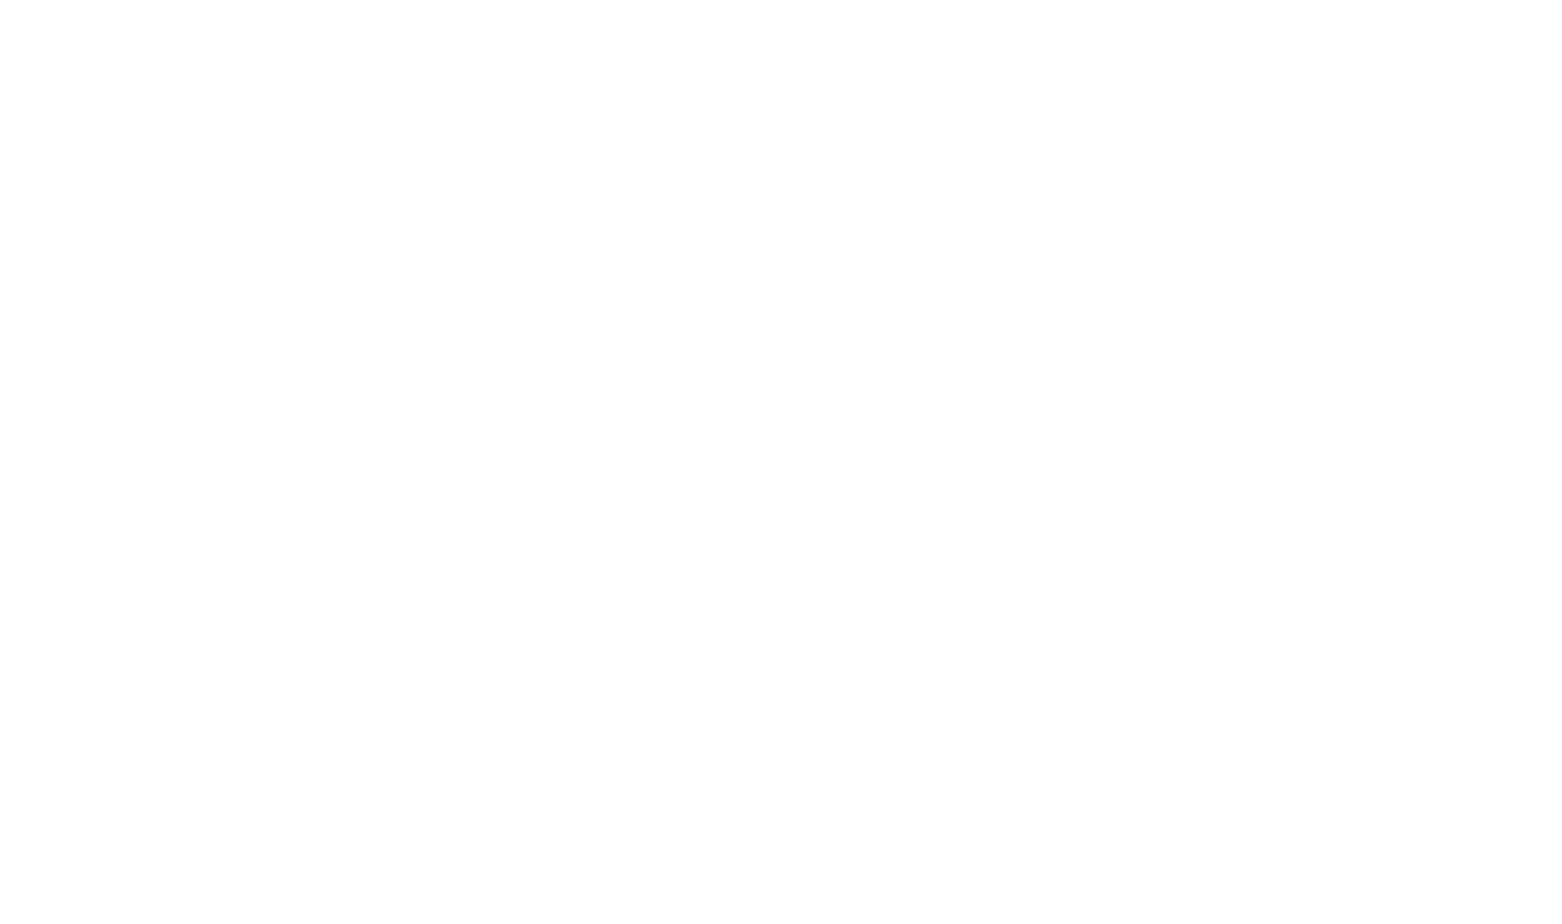 PSP Swiss Property logo grand pour les fonds sombres (PNG transparent)